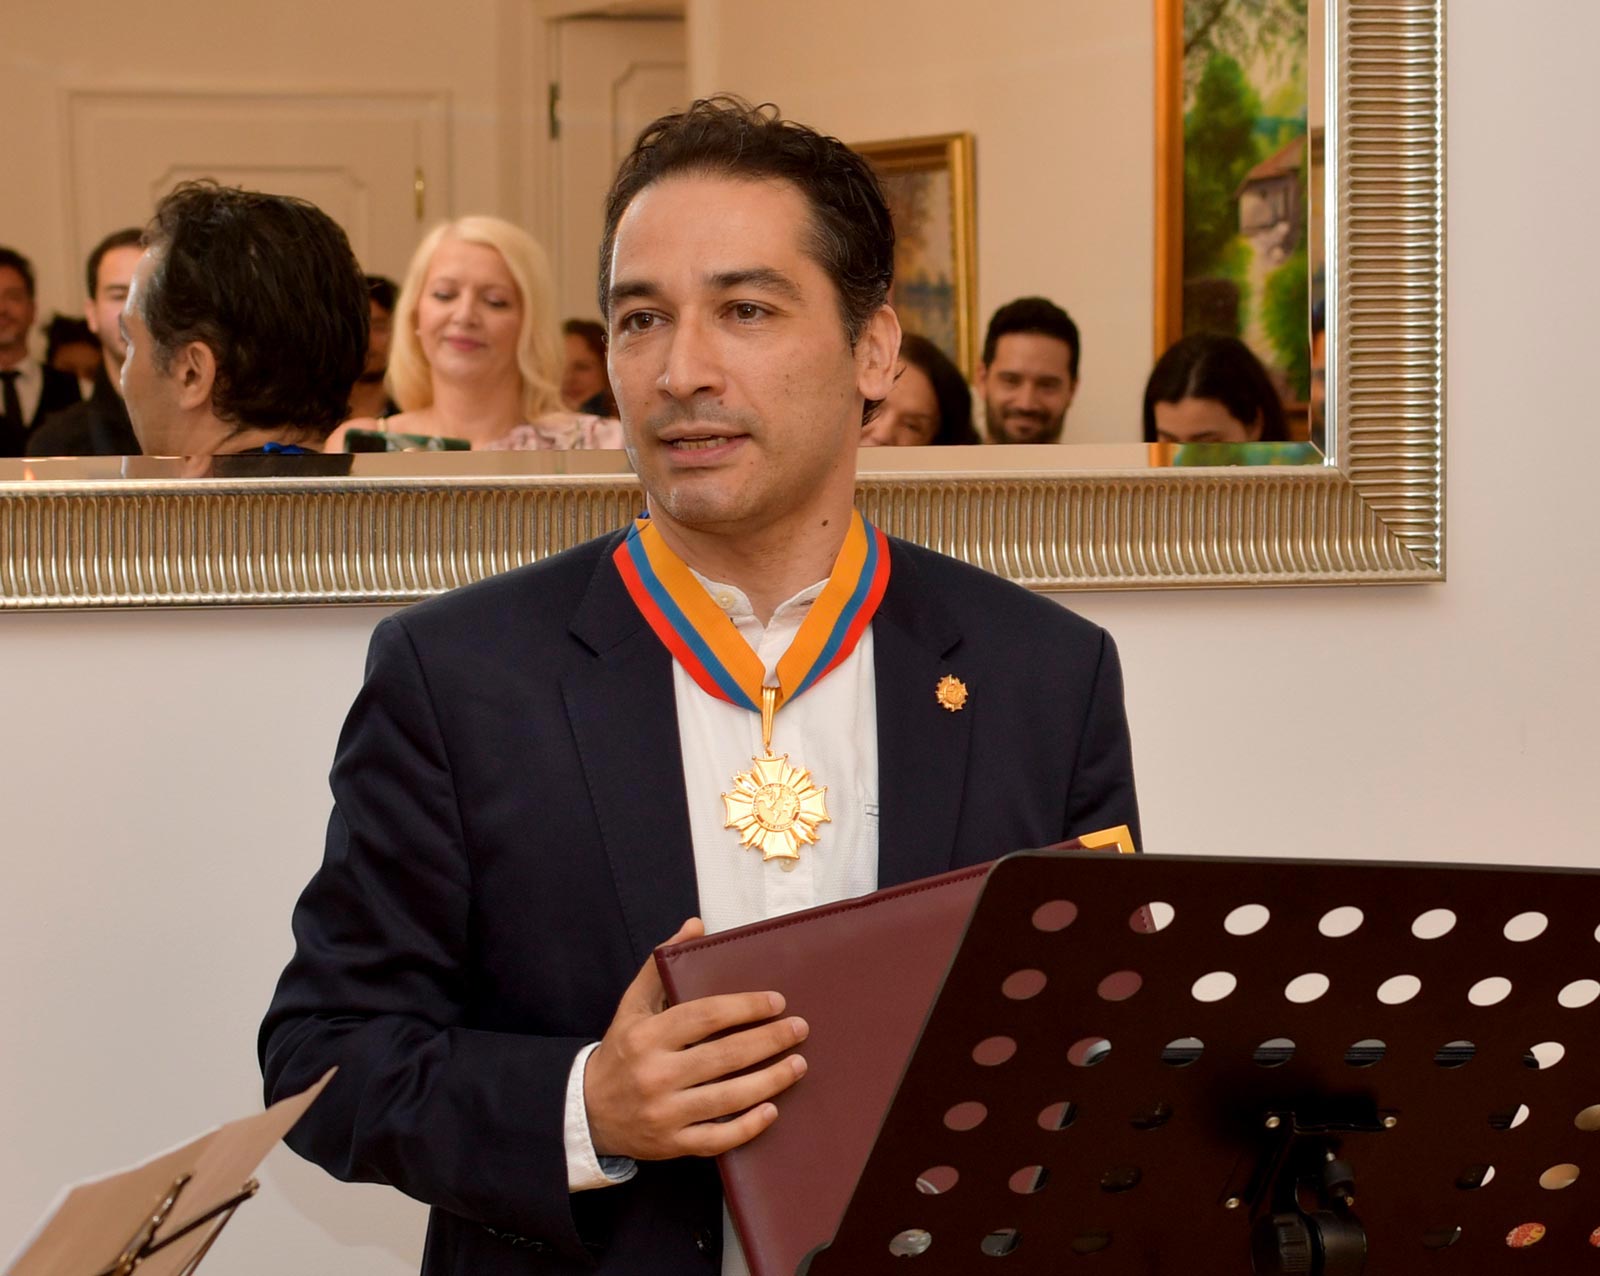 Director de orquesta internacional, orgullo colombiano, Andrés Orozco-Estrada cuando expresaba su agradecimiento por el reconocimiento obtenido. Foto: Eva Messerer.